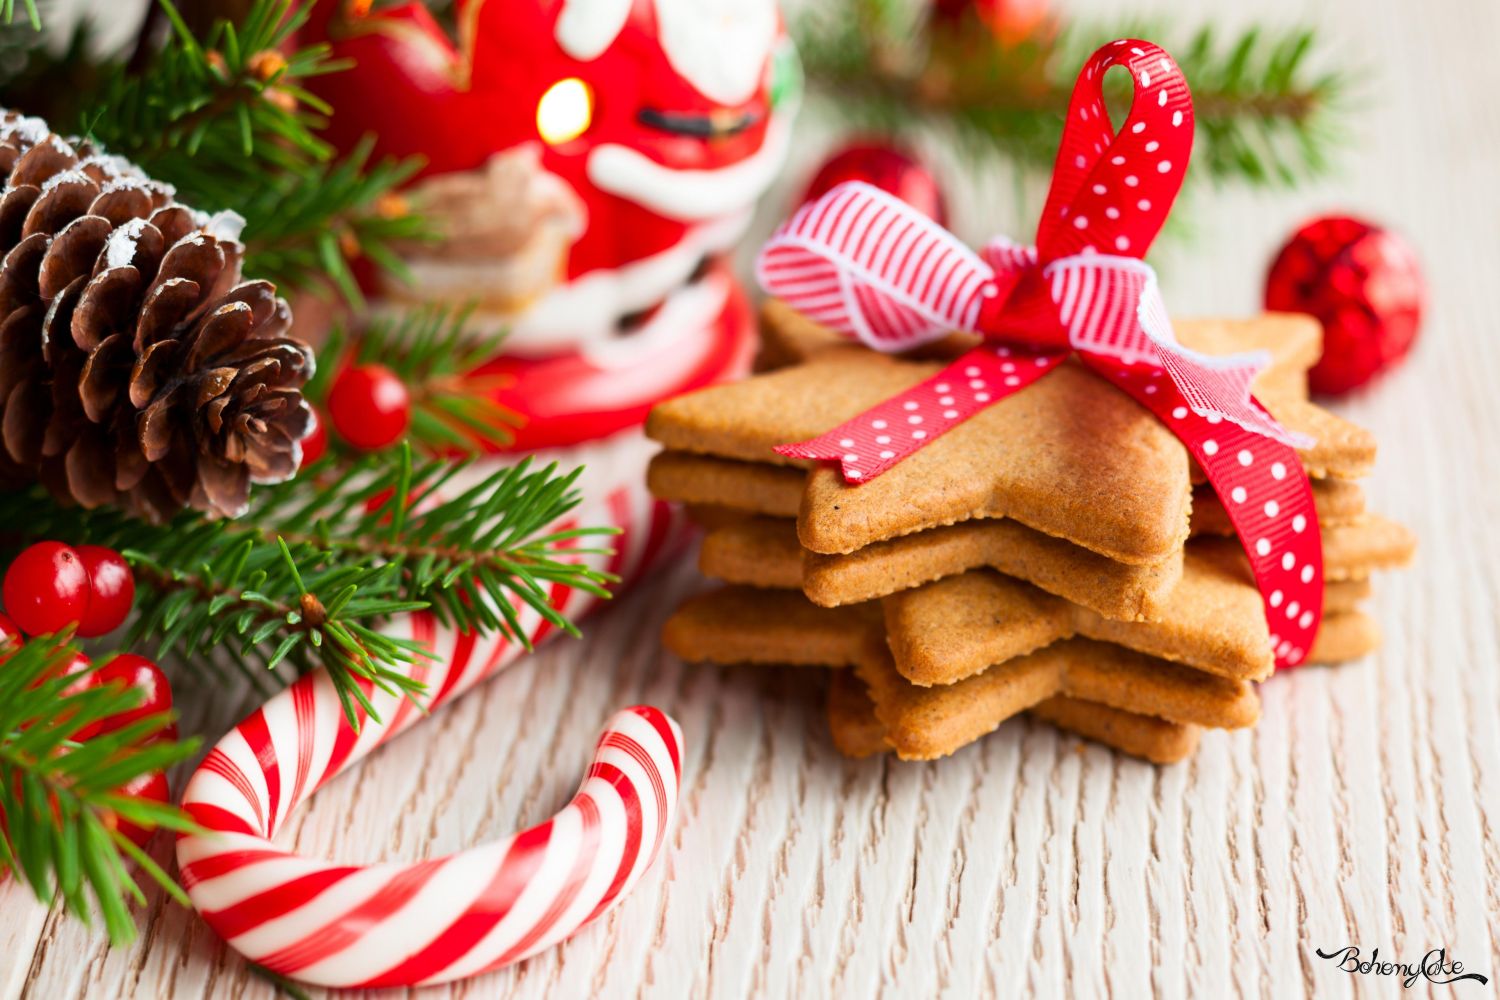 Ricette Di Biscotti Da Regalare A Natale.Le Migliori Ricette Di Biscotti Da Regalare A Natale Bohemycake